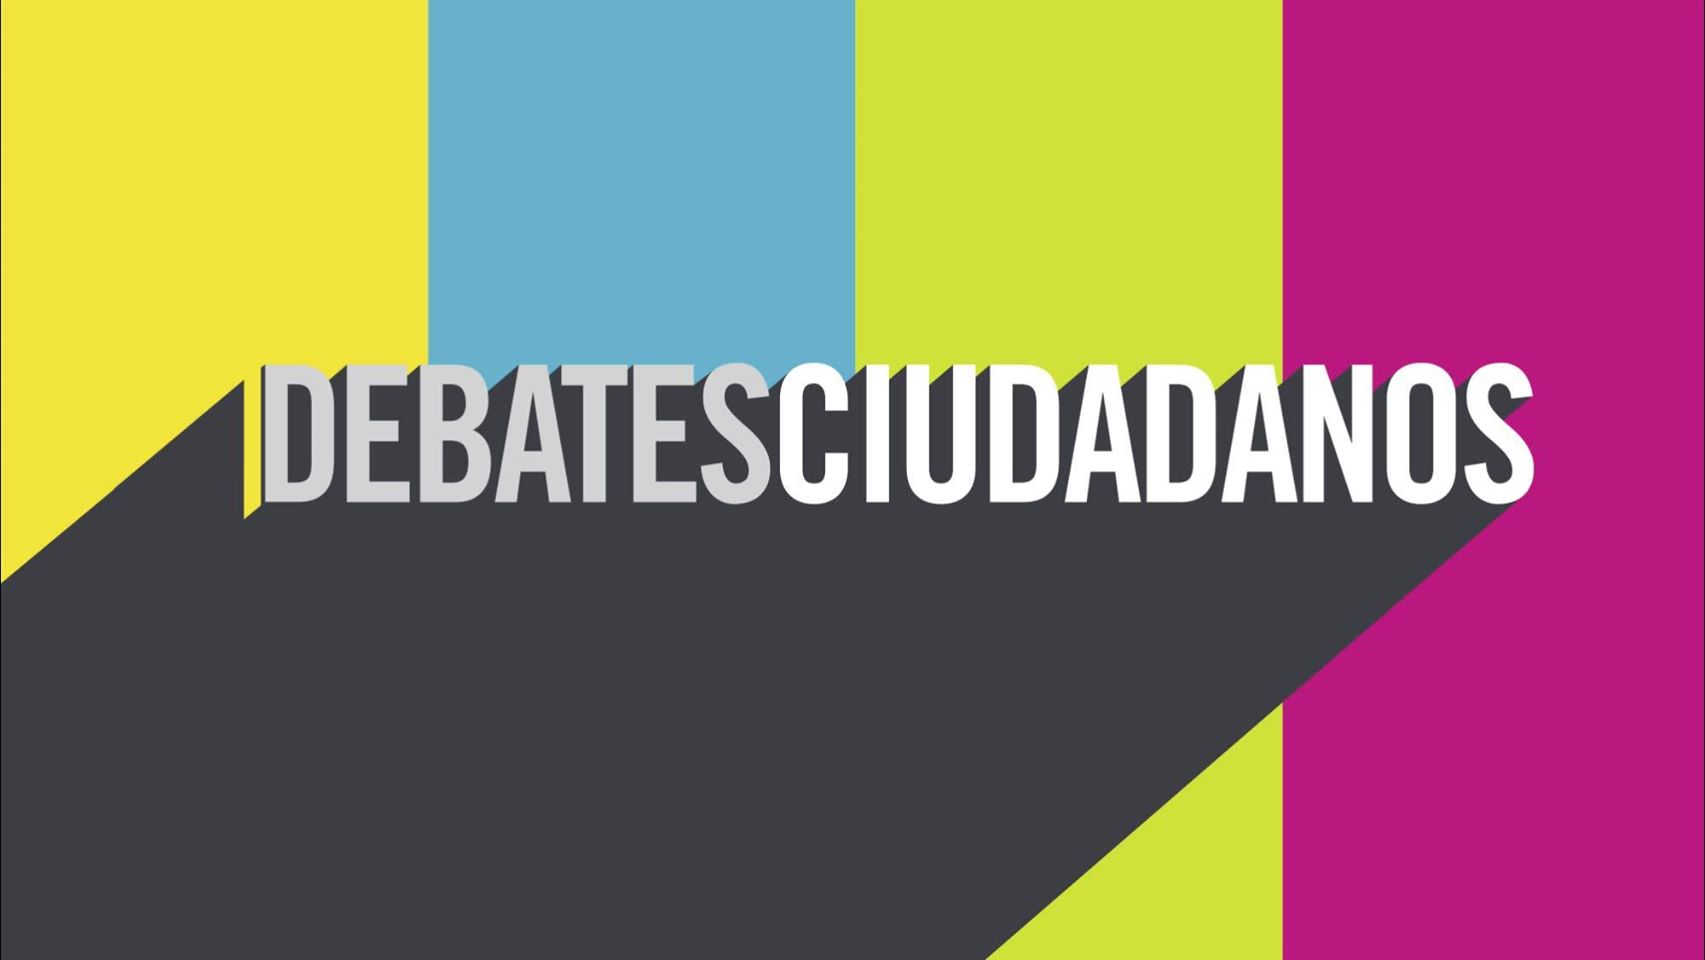 16 millones de mexicanos siguieron los Debates Ciudadanos en redes sociales